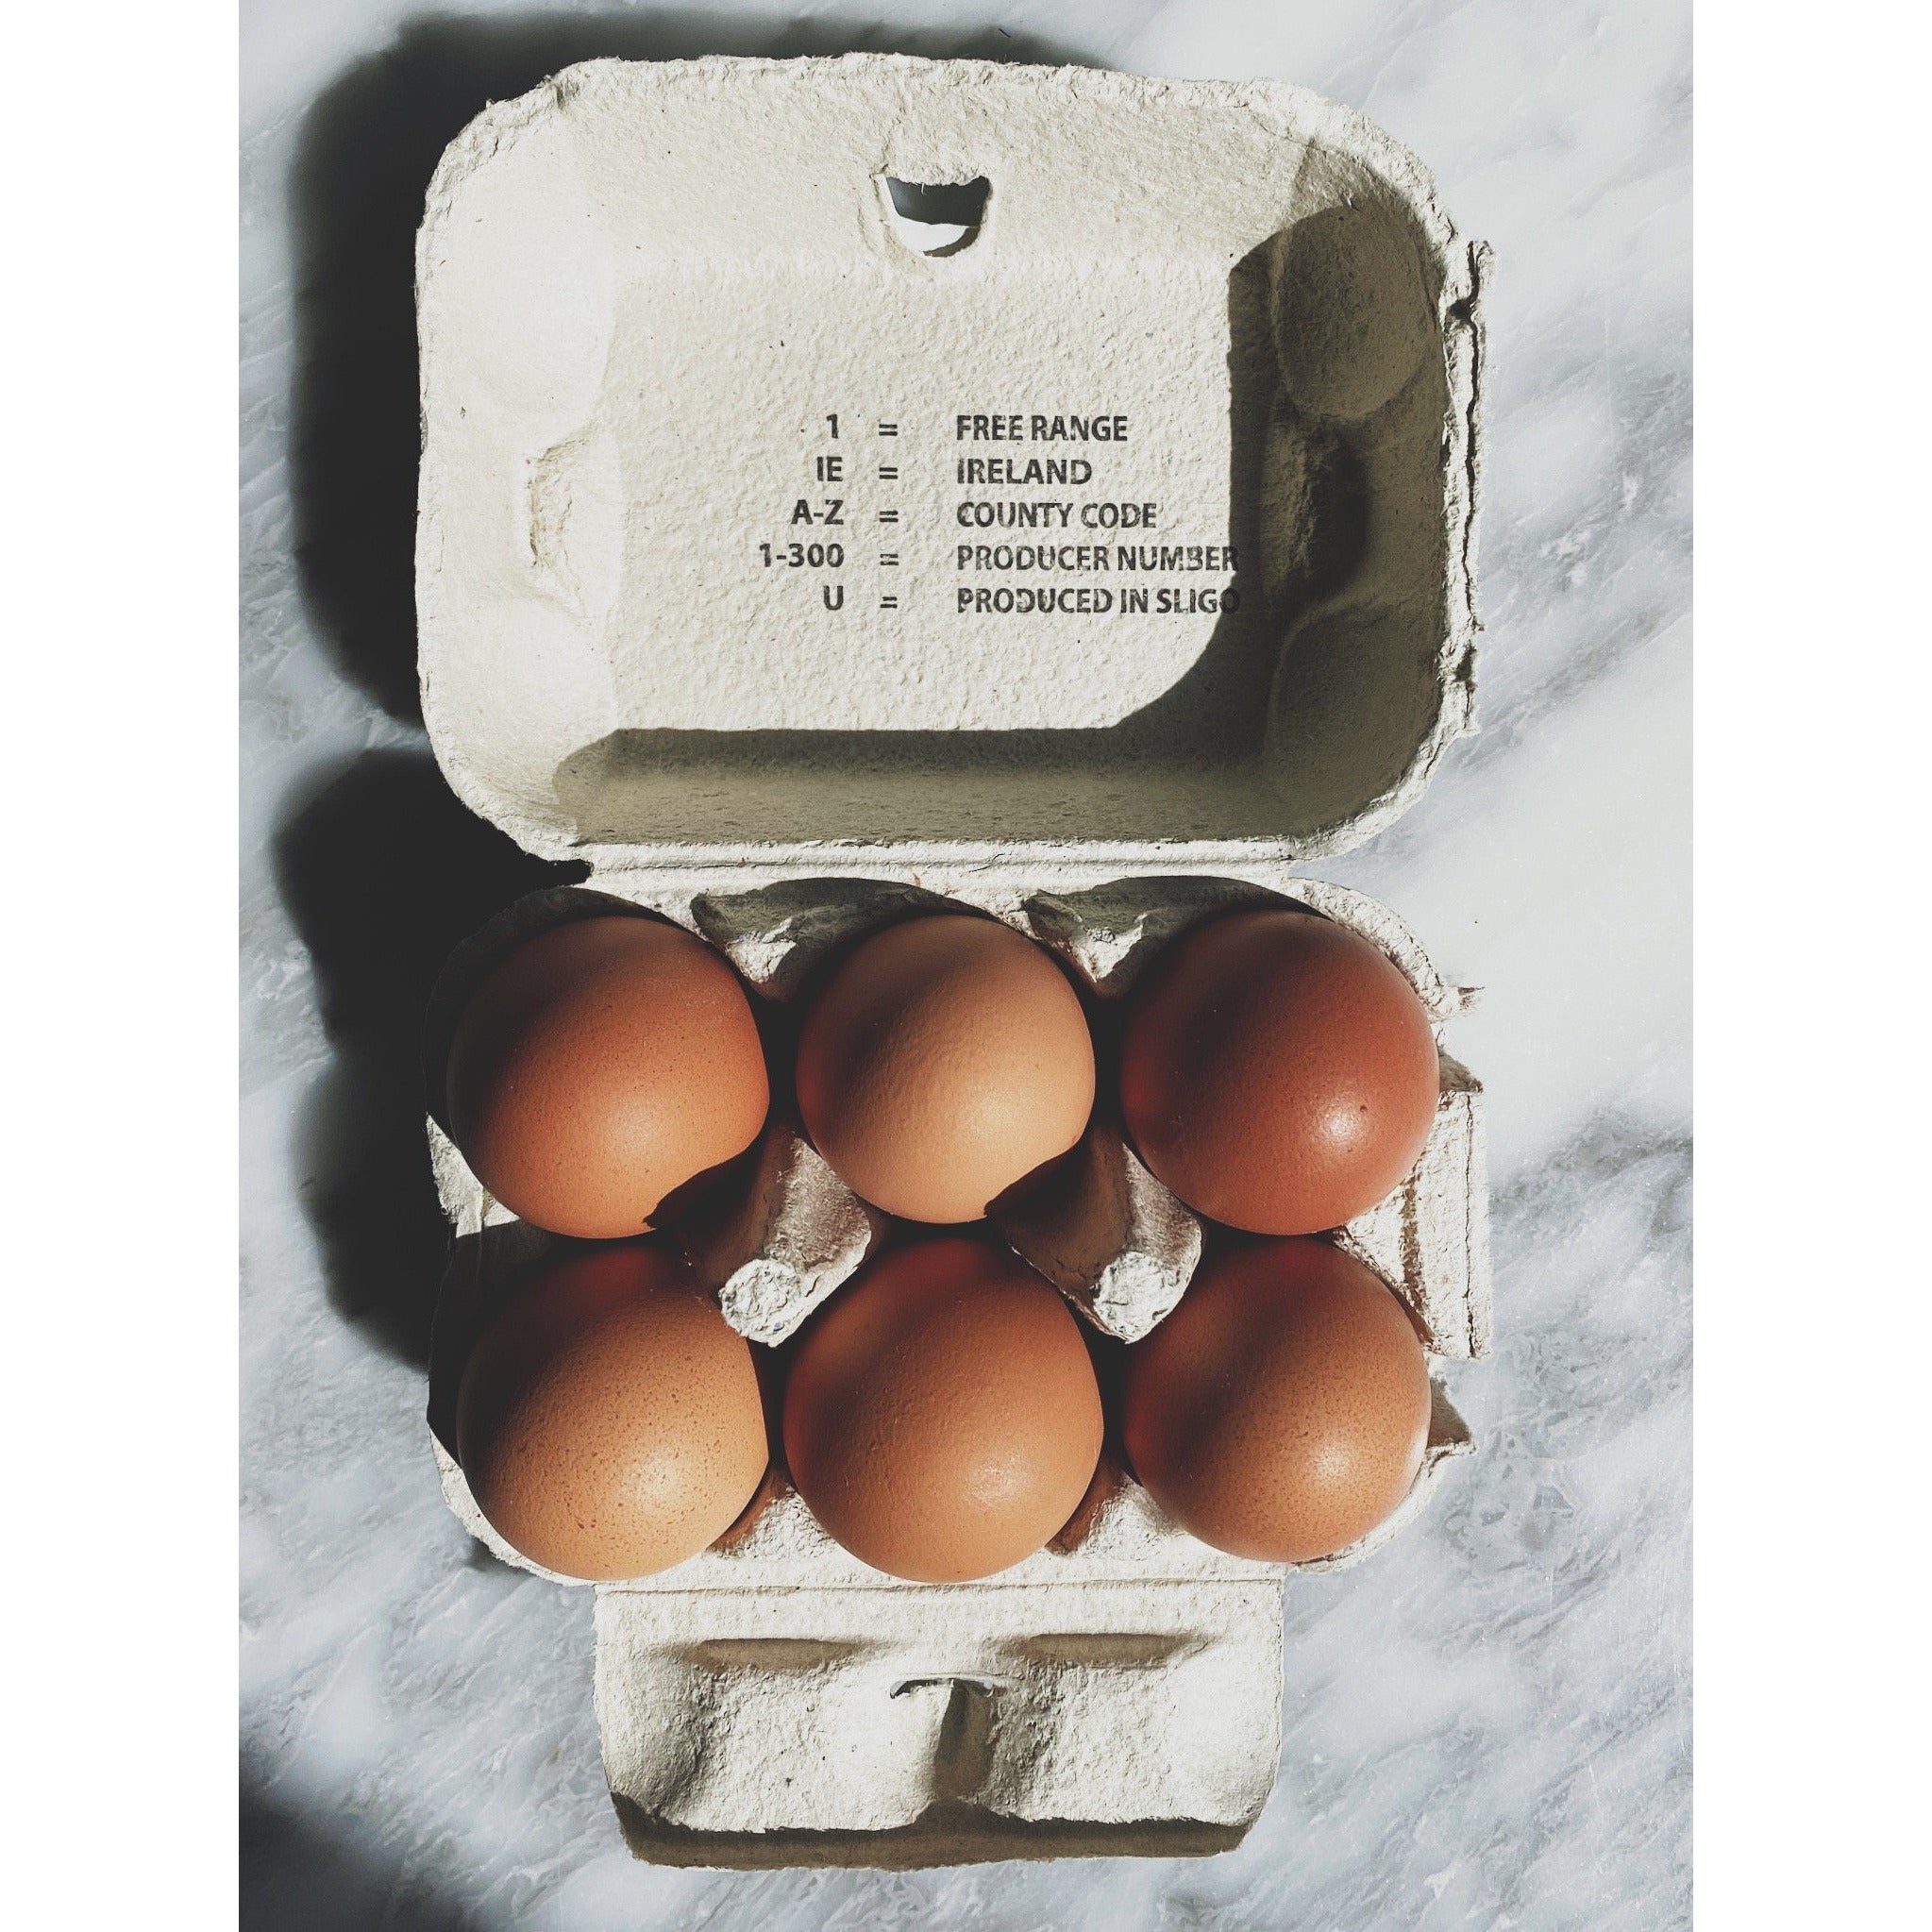 Benbulben Farm Eggs - Kate's Kitchen